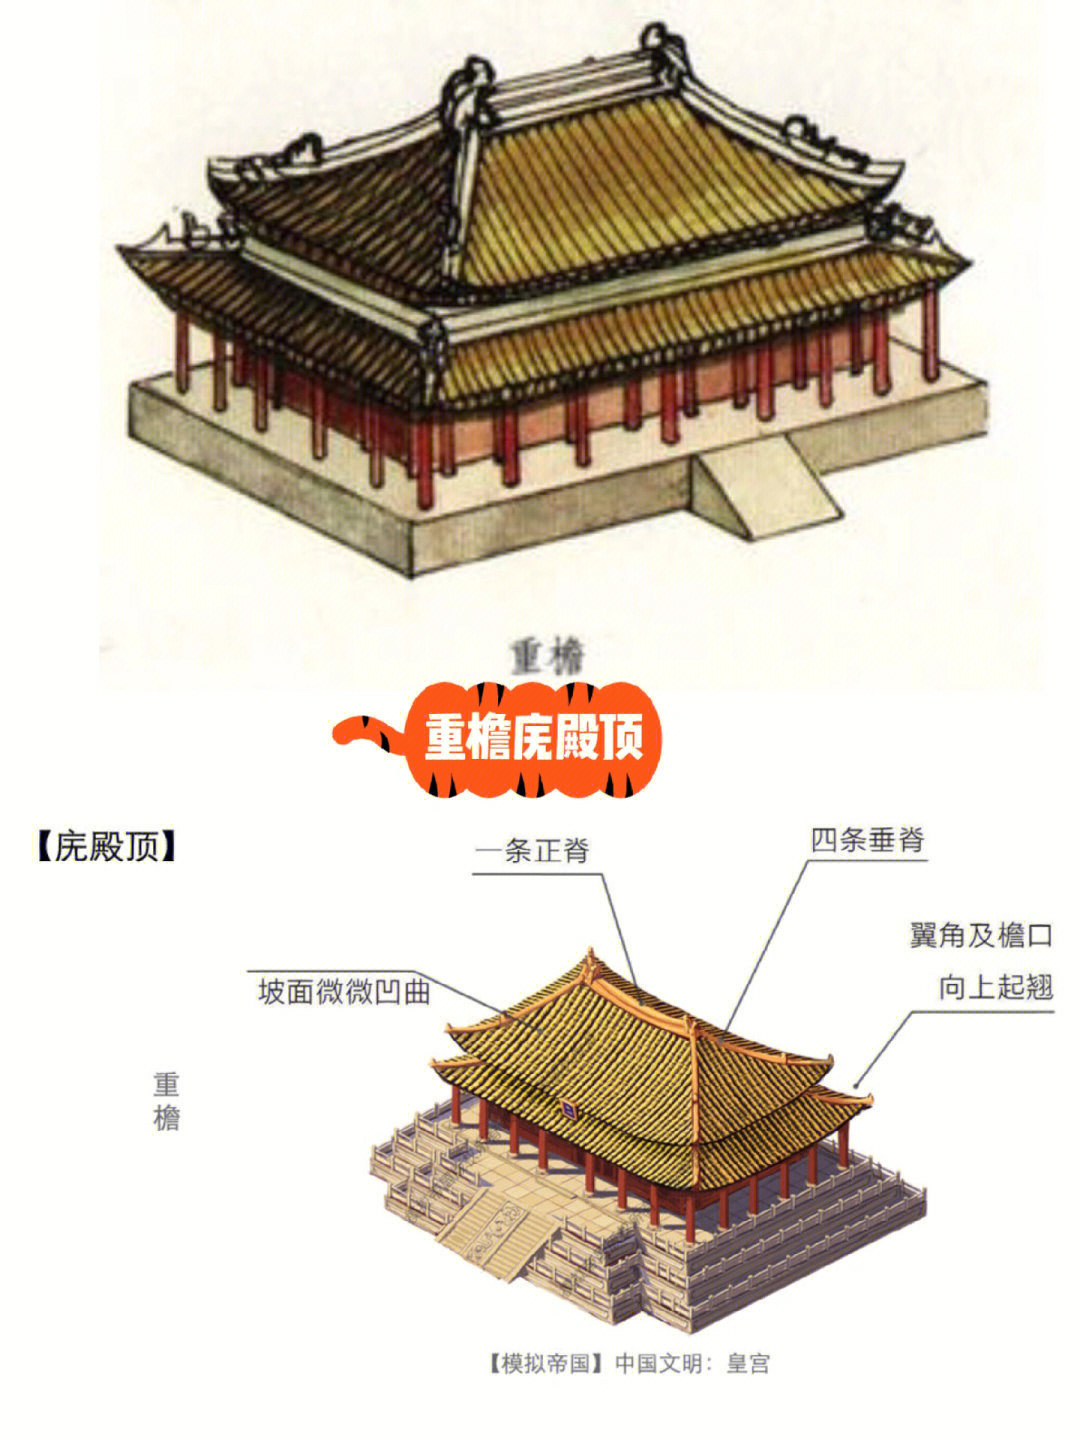 中国古建筑屋顶分类part1庑殿顶和歇山顶